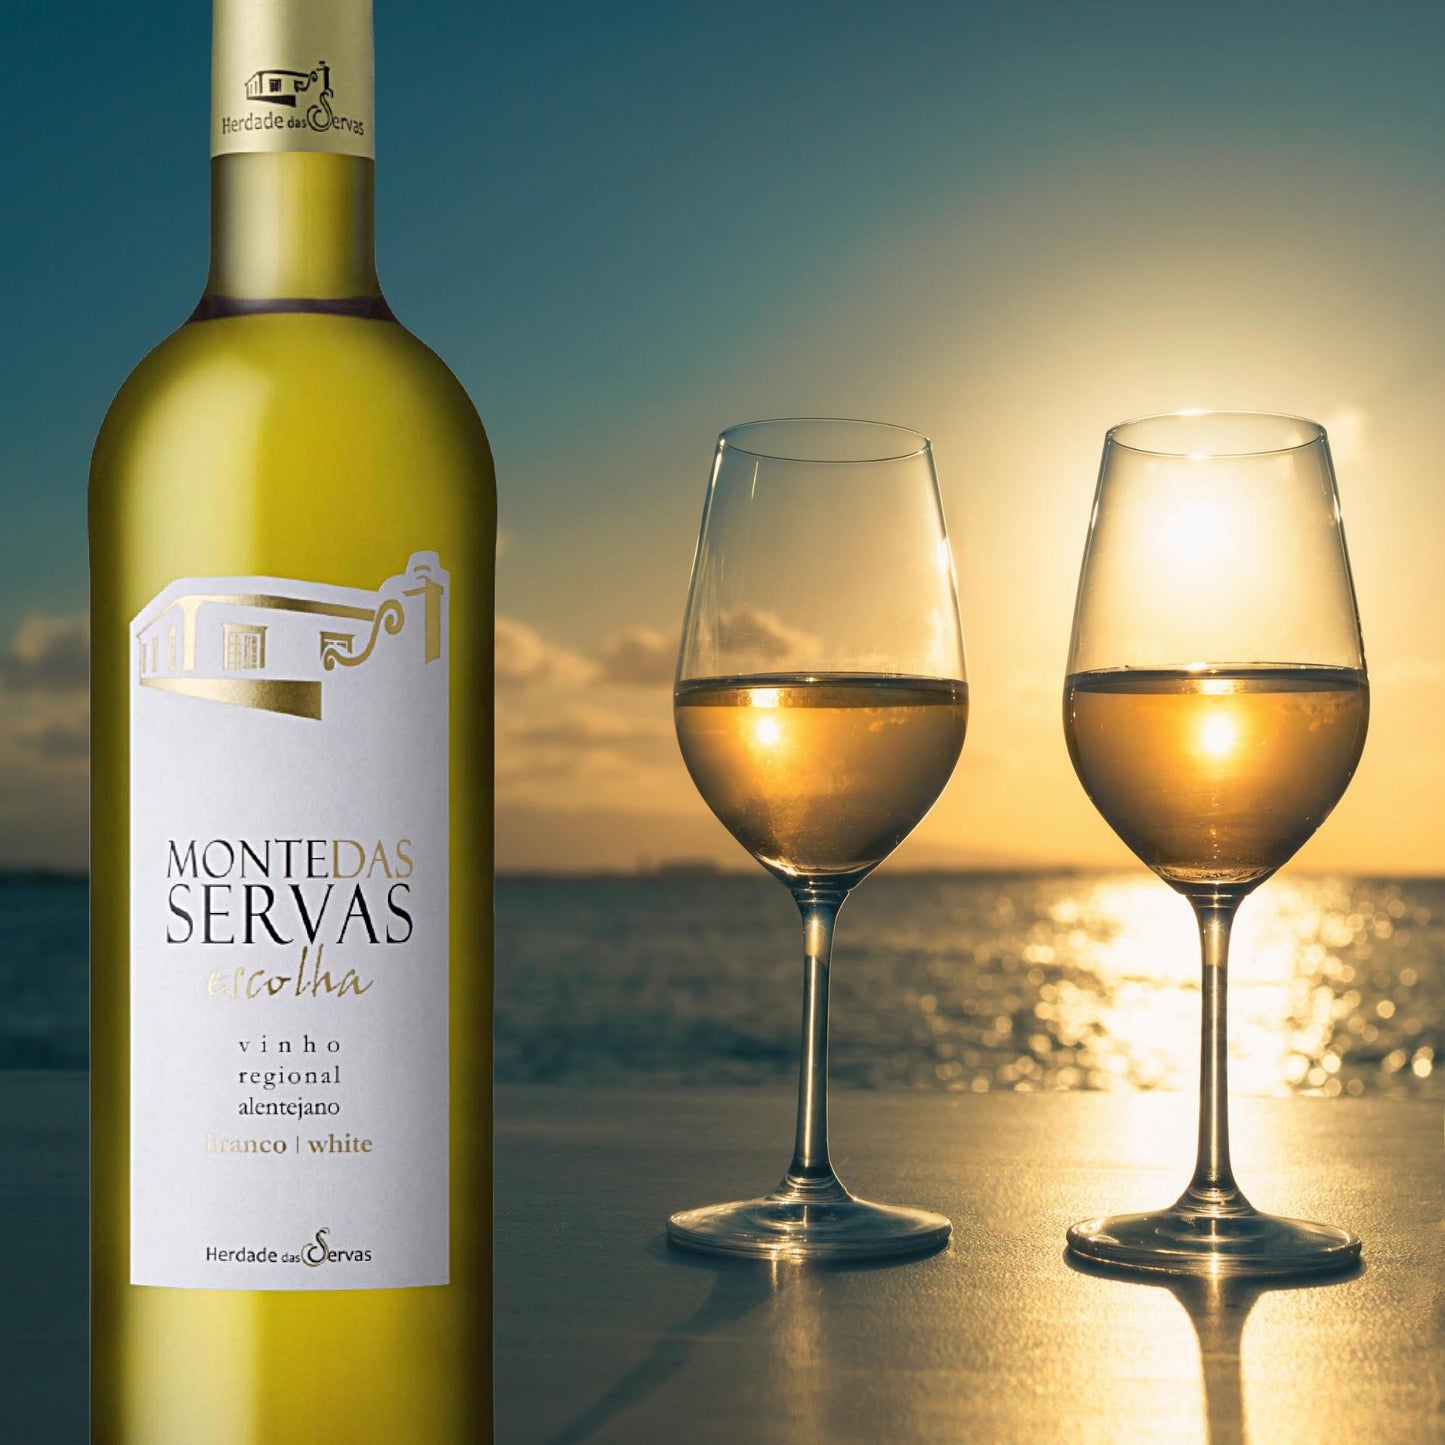 
                  
                    Monte das Servas Escolha branco - Weißwein vom Weingut Herdade das Servas. Auf dem Bild sieht man eine Weinflasche. an einem Strand, dahinter das Meer und 2 gefüllt Gläser mit Weißwein. Bild der Vinho Bar in Wuppertal.
                  
                